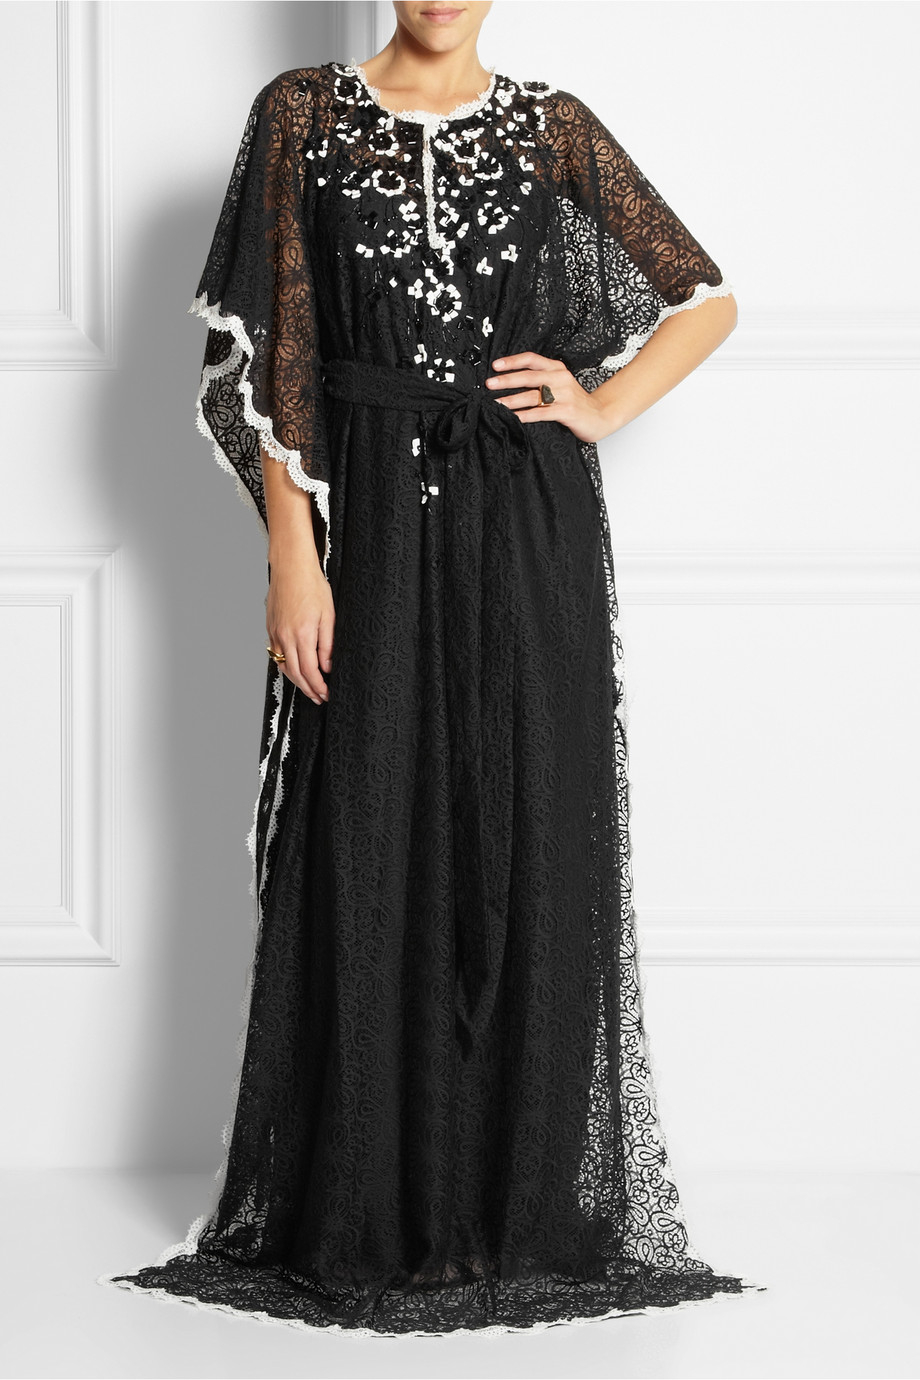 Lyst - Oscar De La Renta Embellished Cotton-Lace Kaftan in Black